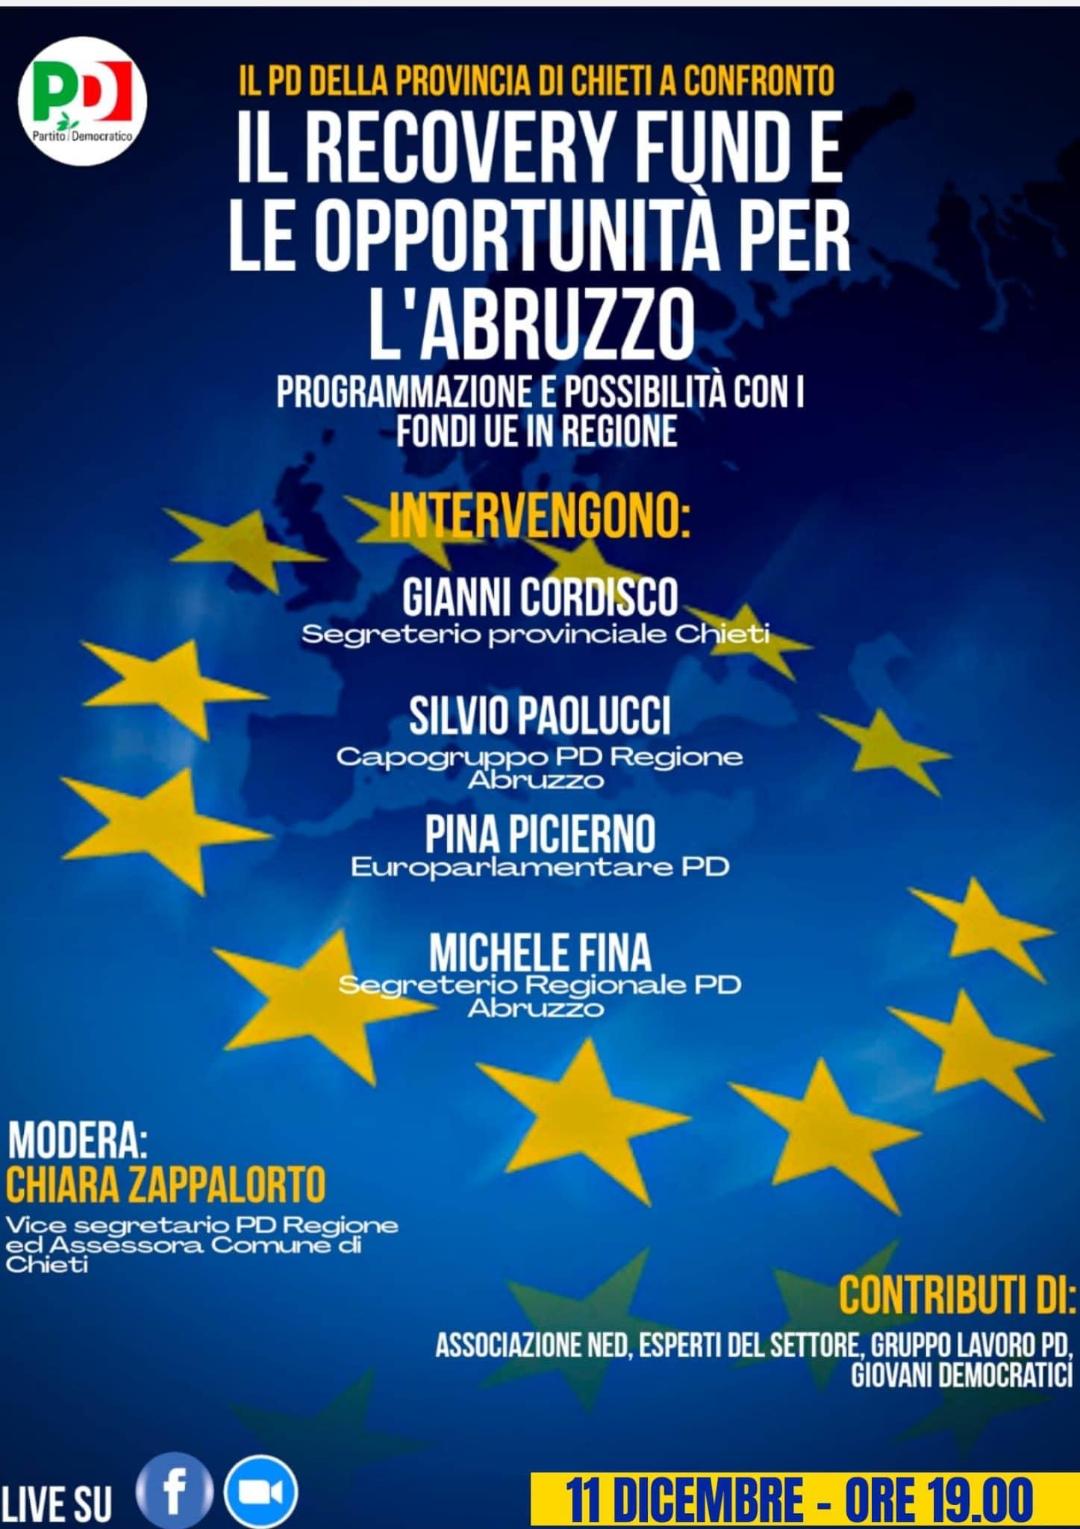 Abruzzo, Pd provinciale Chieti: Preoccupazione per la scarsa capacità della Regione sull’utilizzo dei fondi dell’UE